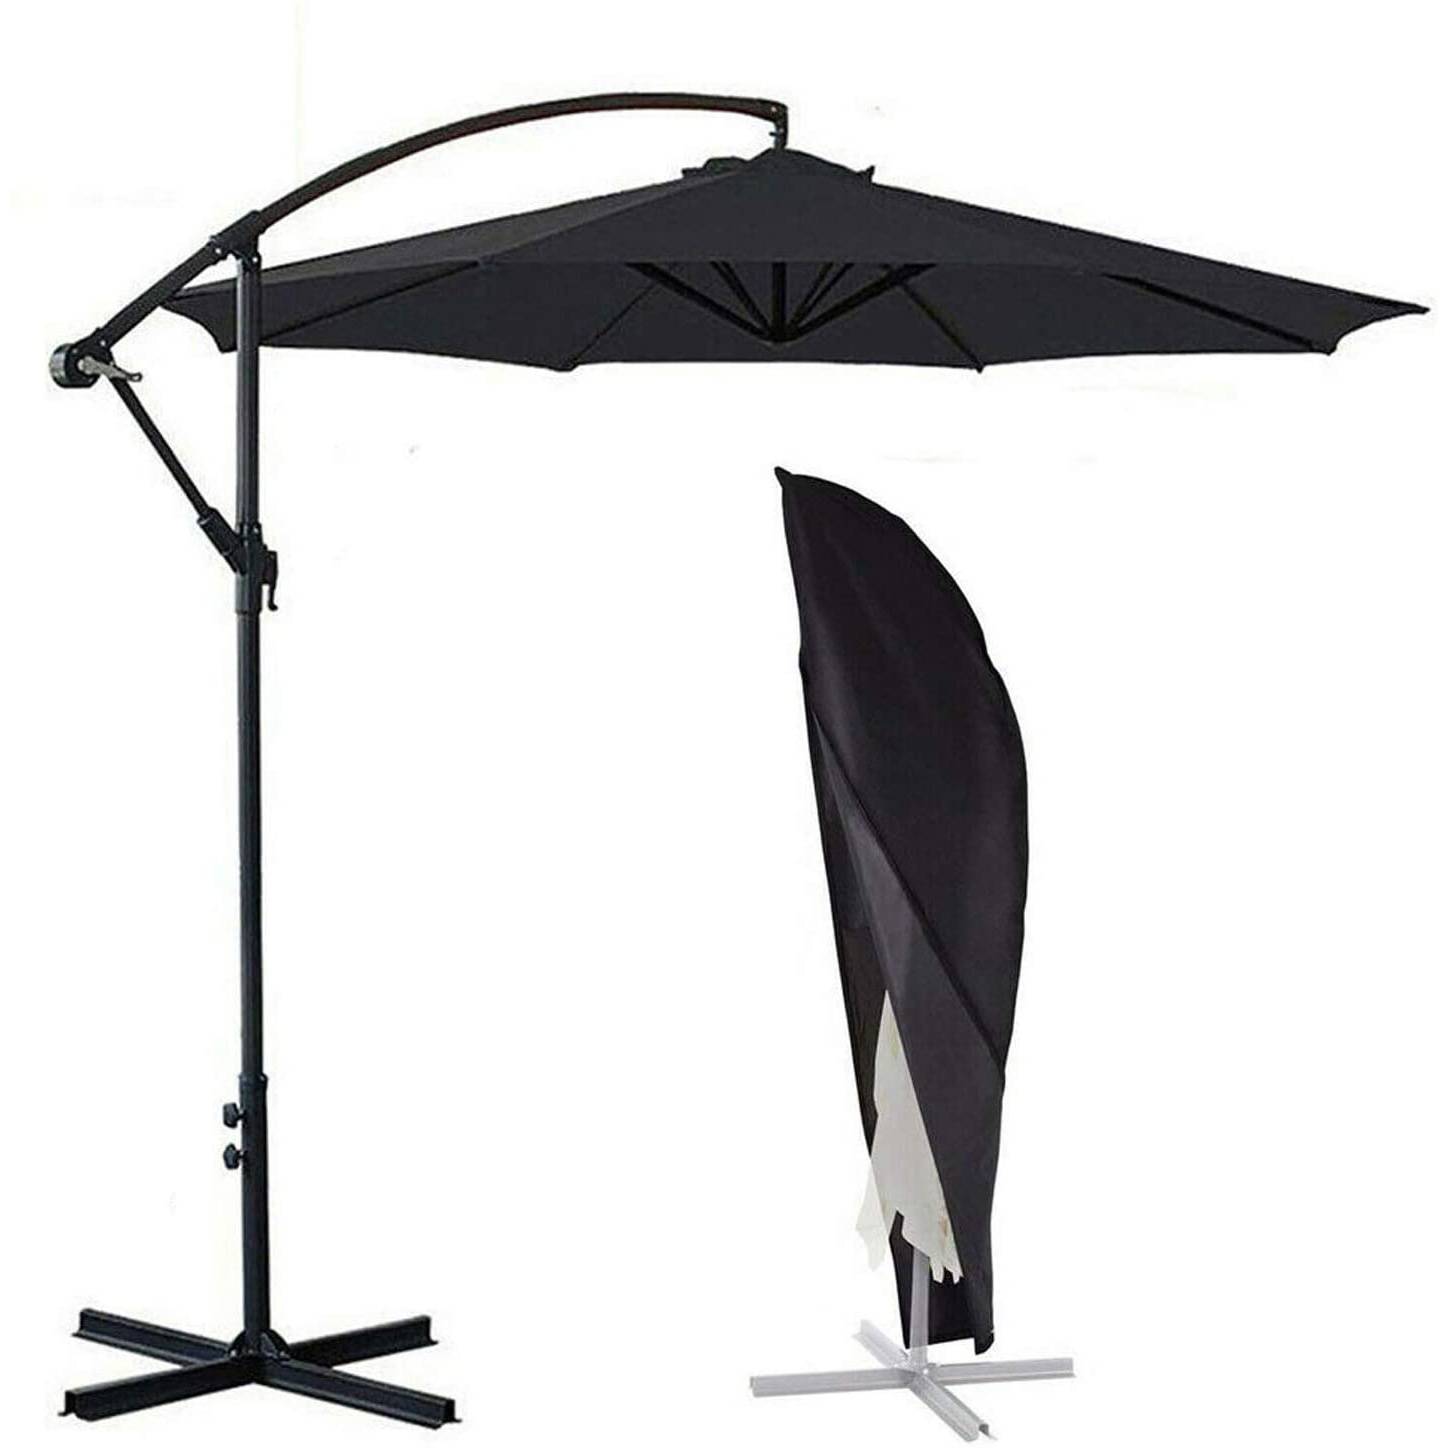 3m * 6ribs alta calidad resistente gran paraguas al aire libre jardín sombrilla patio paraguas